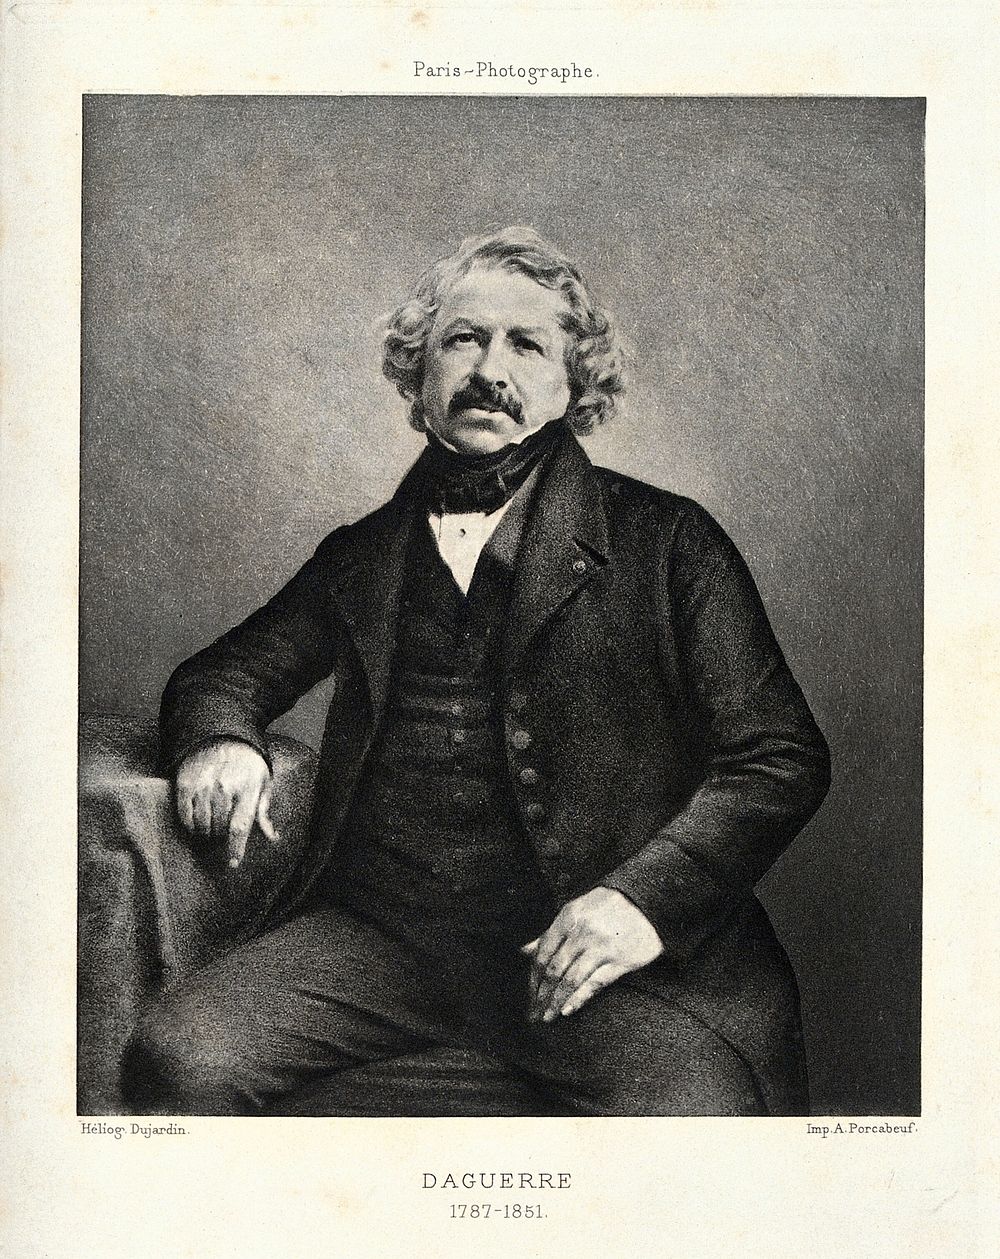 Louis Jacques Mandé Daguerre. Heliogravure by Dujardin.